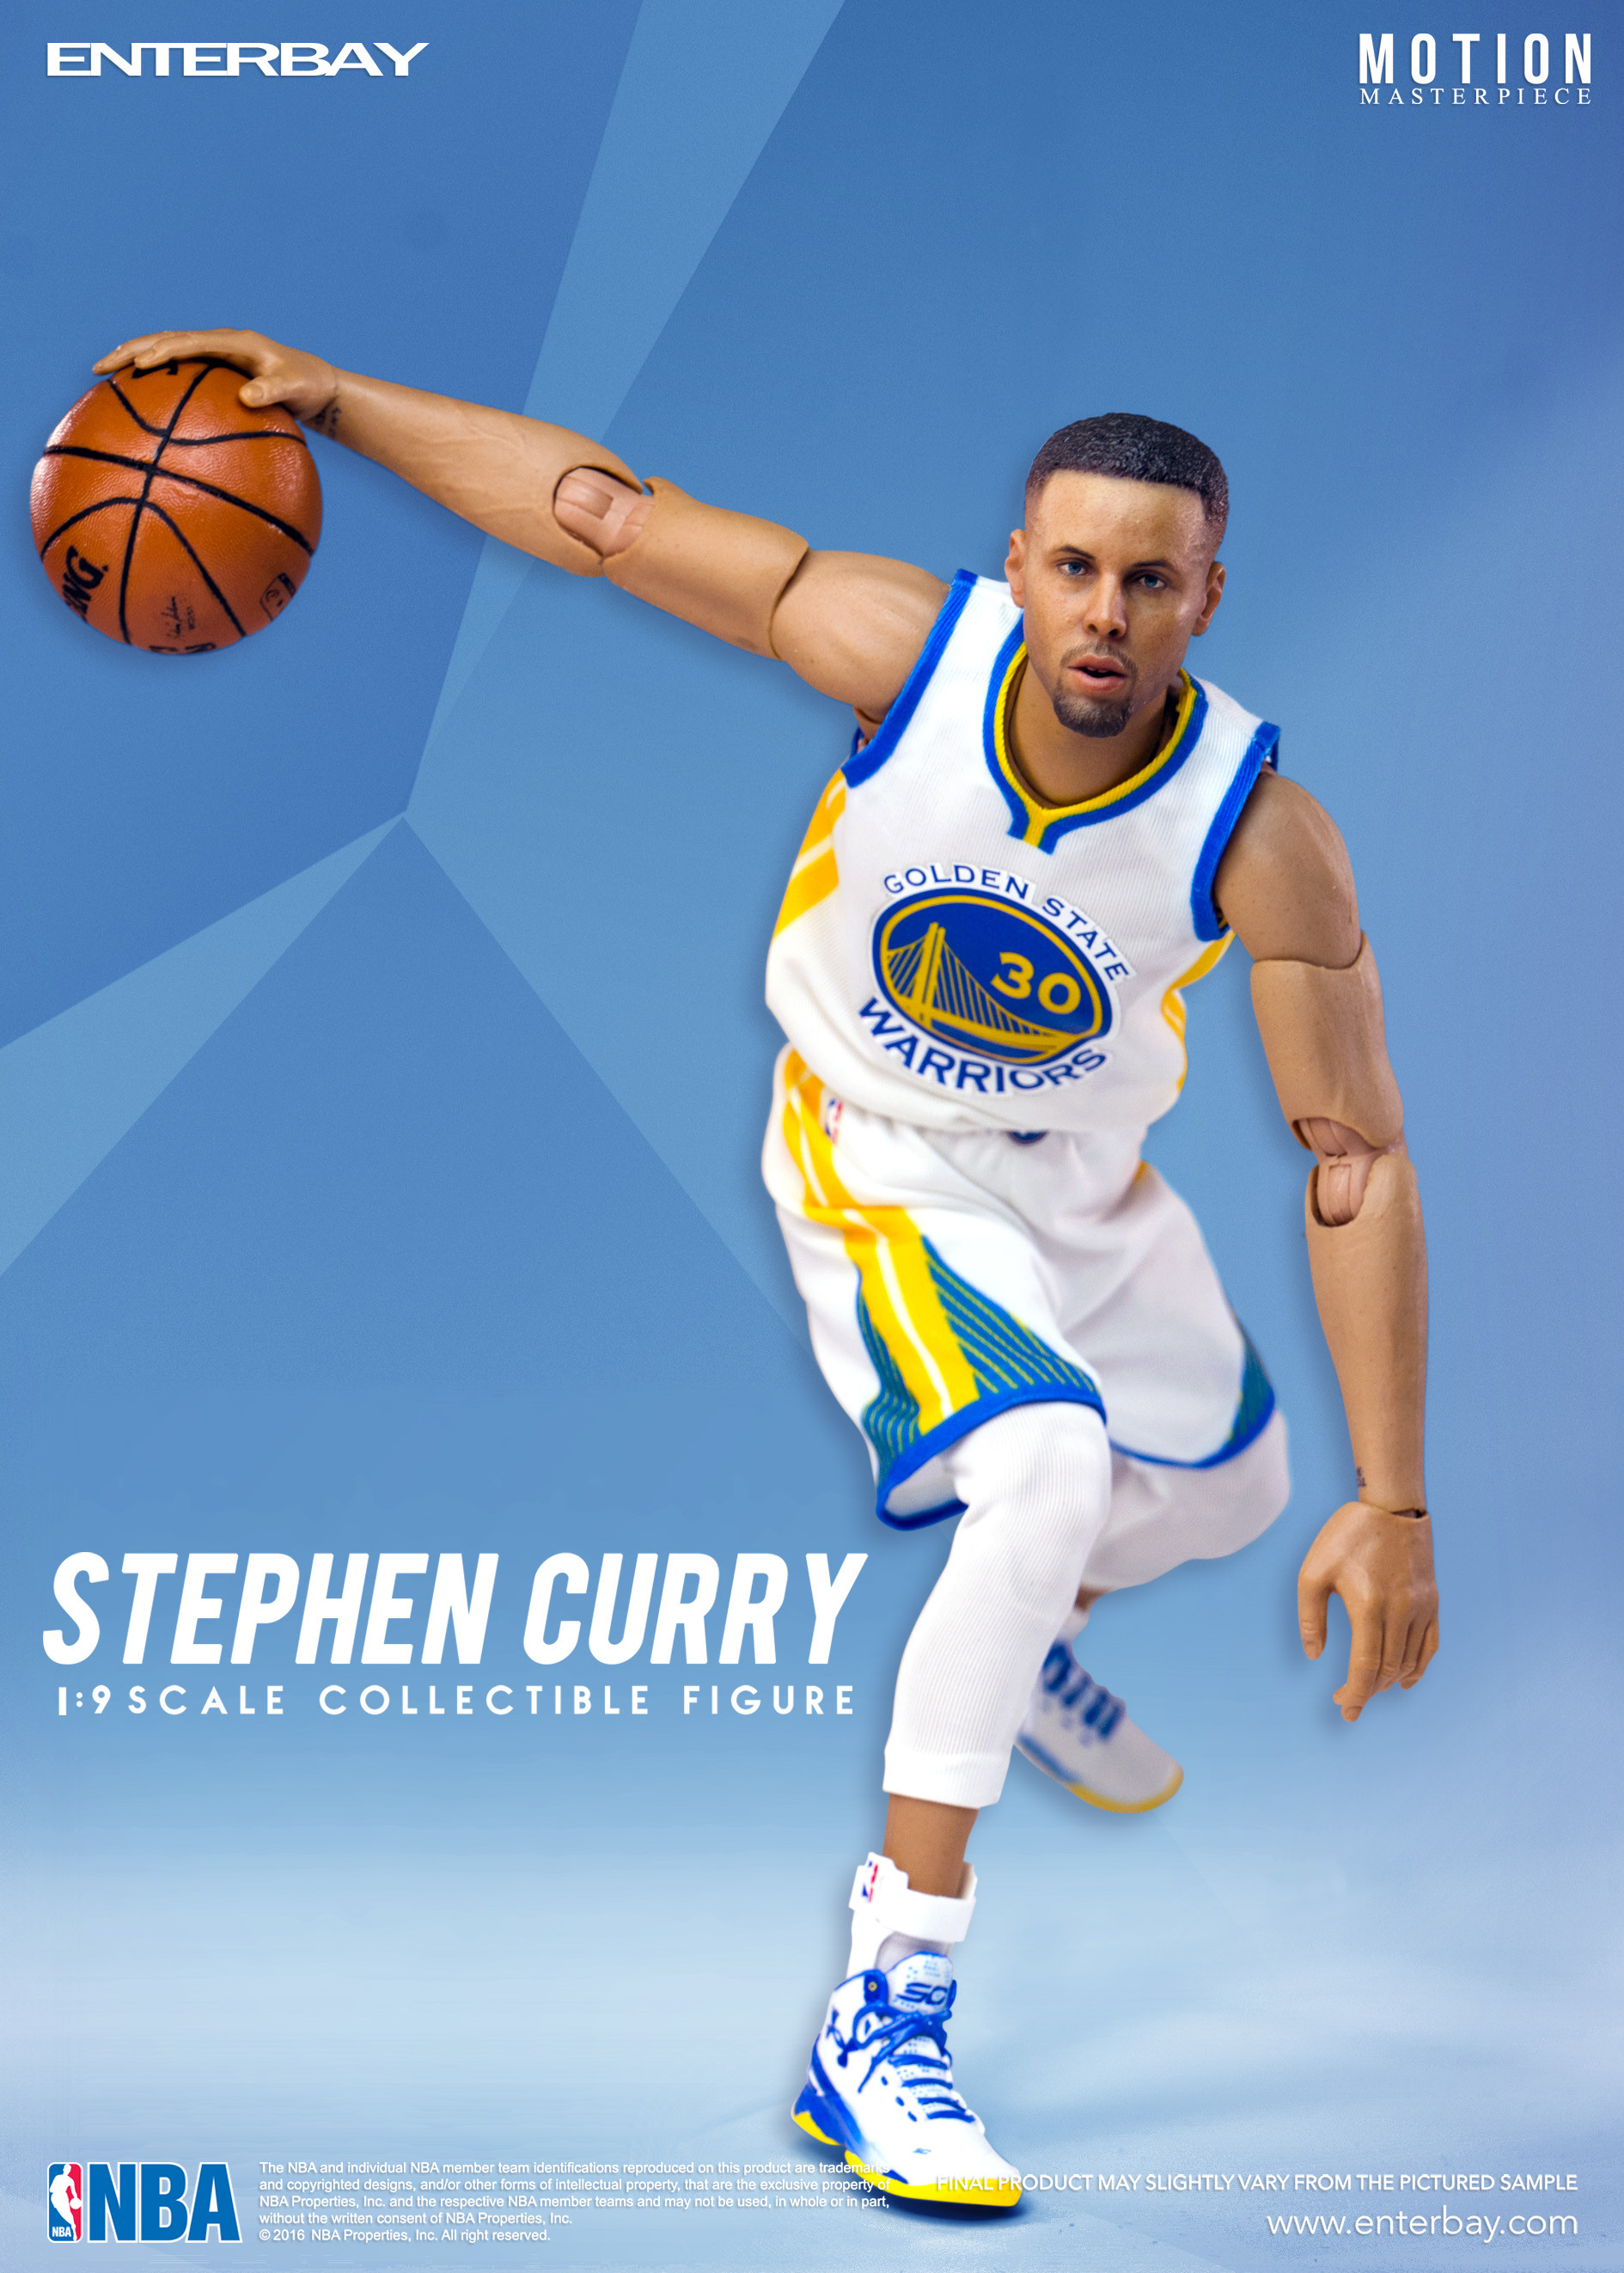 steph curry live wallpapers,giocatore di pallacanestro,giocatore,gli sport,abbigliamento sportivo,pallacanestro